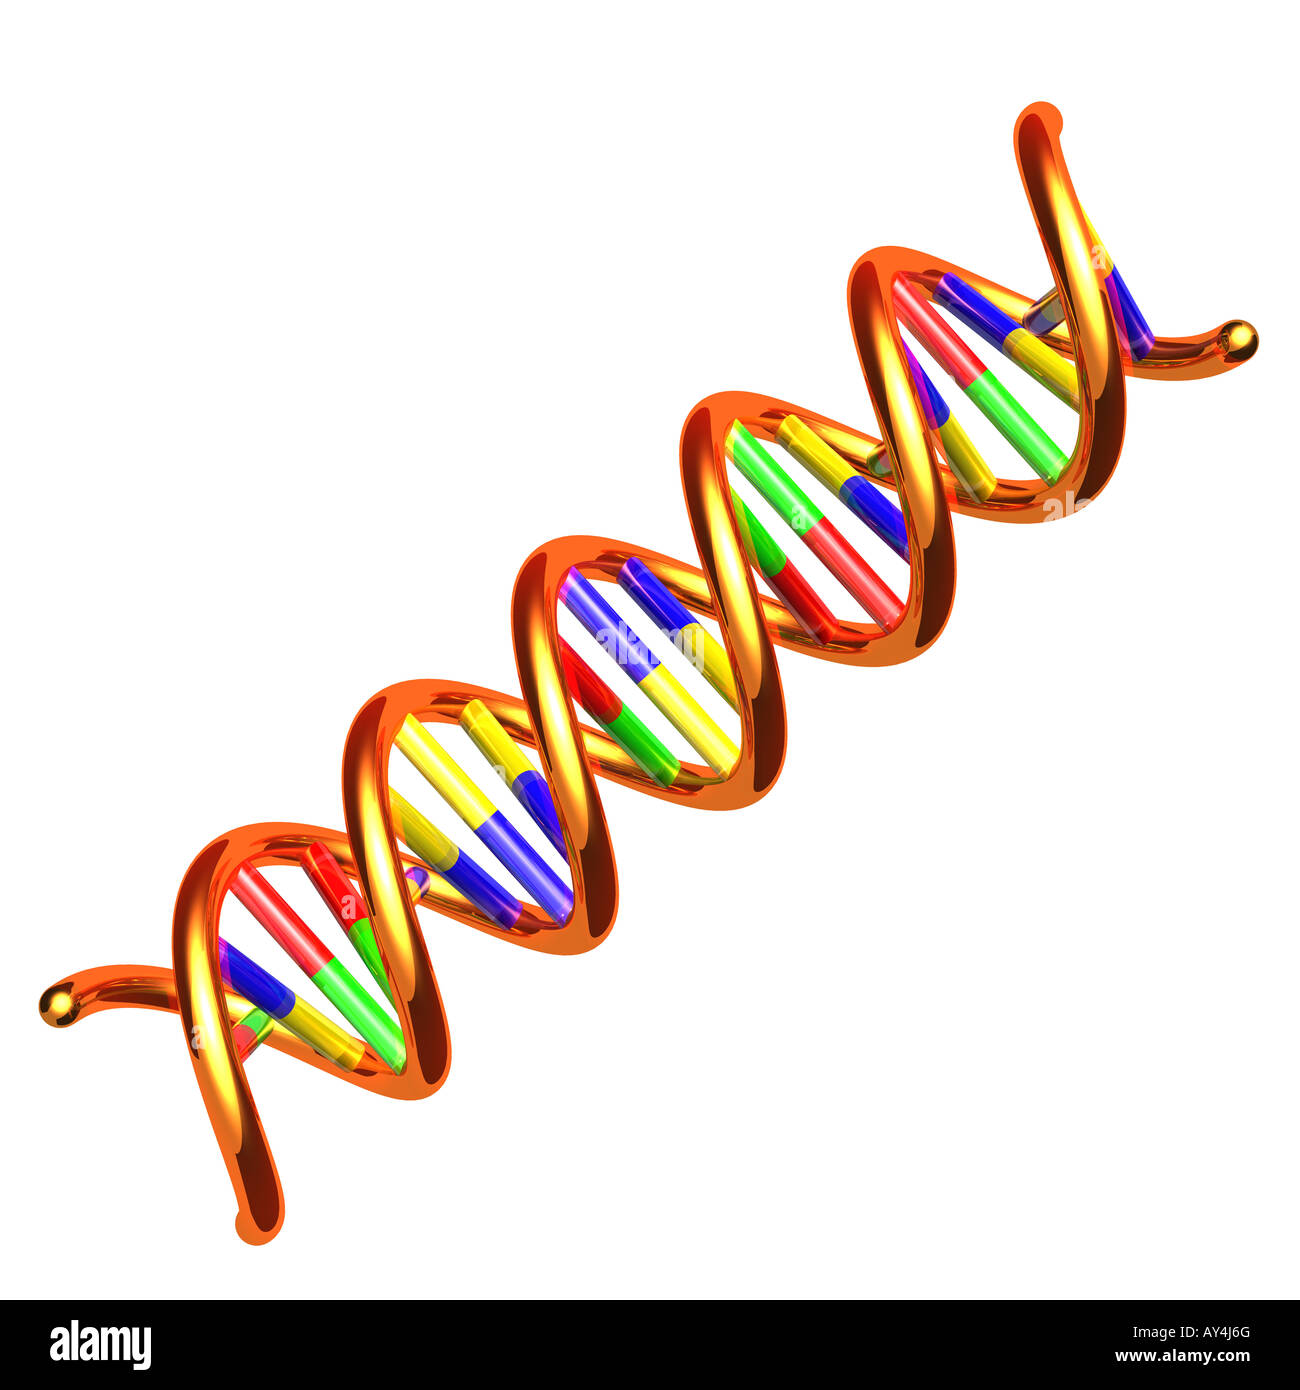 DNA-Molekül Stockfoto